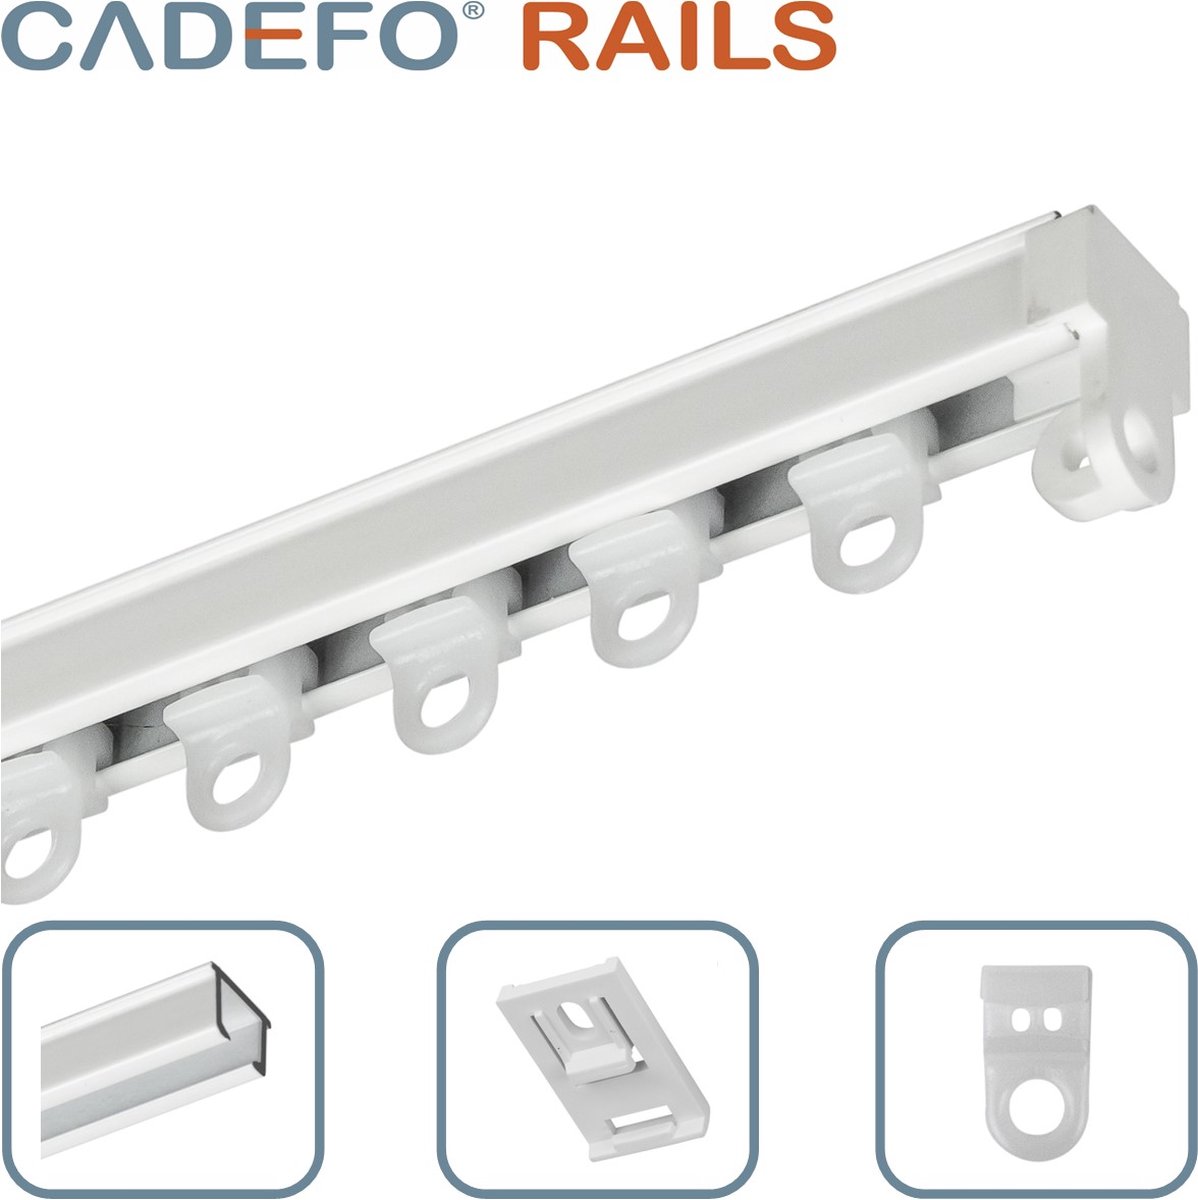 CADEFO RAILS (301 - 350 cm) Gordijnrails - Compleet op maat! - UIT 1 STUK - Leverbaar tot 6 meter - Plafondbevestiging - Lengte 328 cm